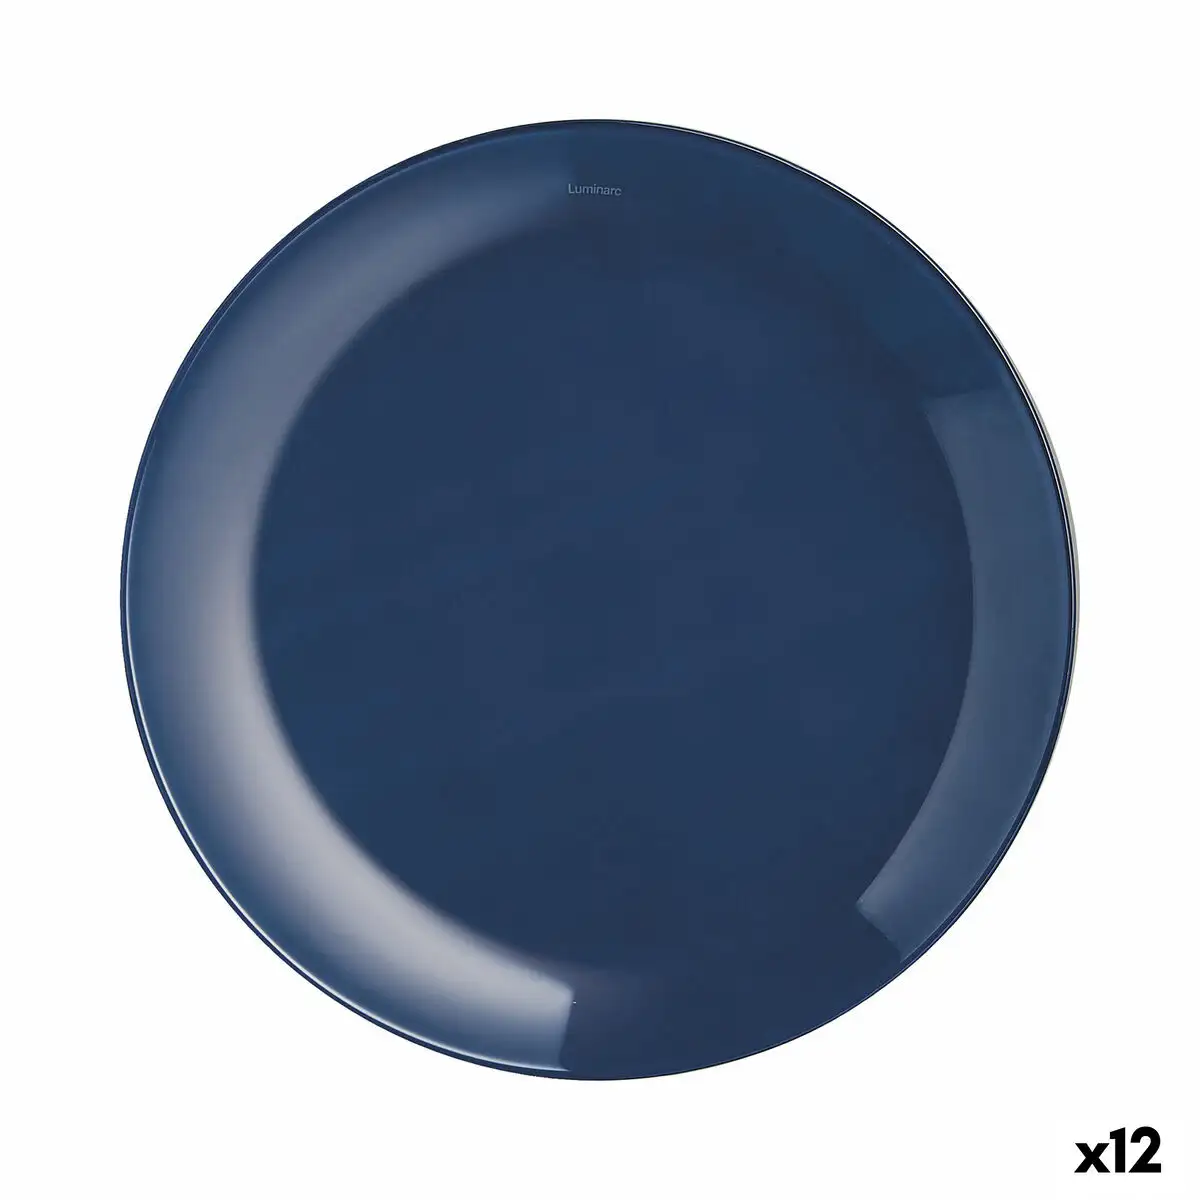 Assiette a dessert luminarc arty bleu verre o 20 5 cm 12 unites _4815. DIAYTAR SENEGAL - L'Art de Vivre avec Authenticité. Explorez notre gamme de produits artisanaux et découvrez des articles qui apportent une touche unique à votre vie.